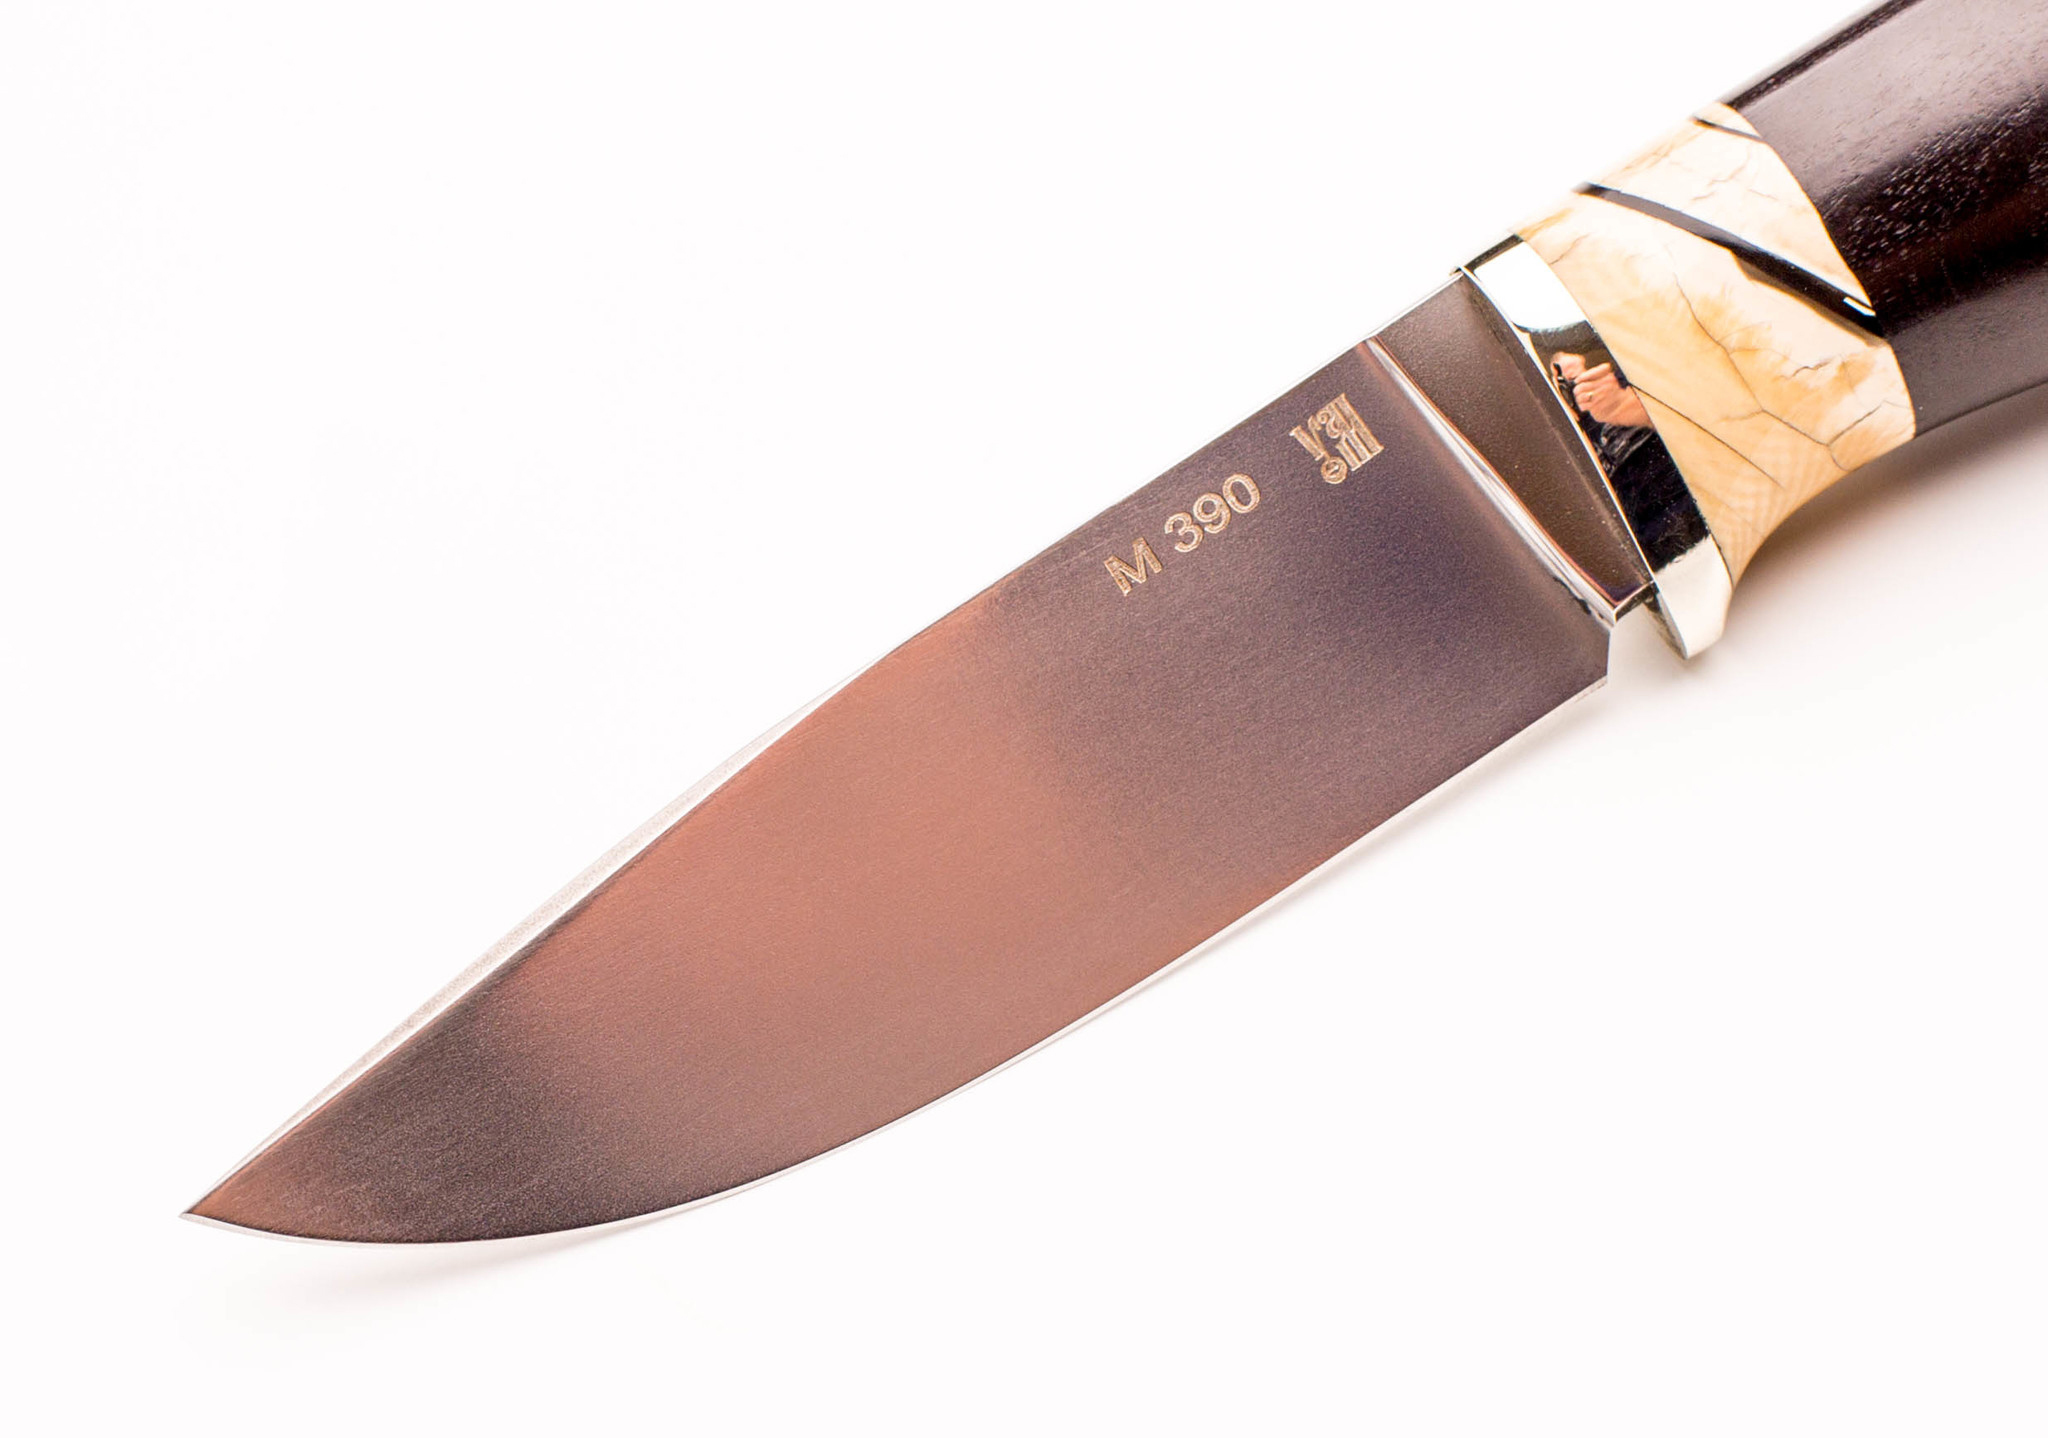 Нож Городской, сталь M390, рукоять граб, вставка зуб мамонта - фото 3